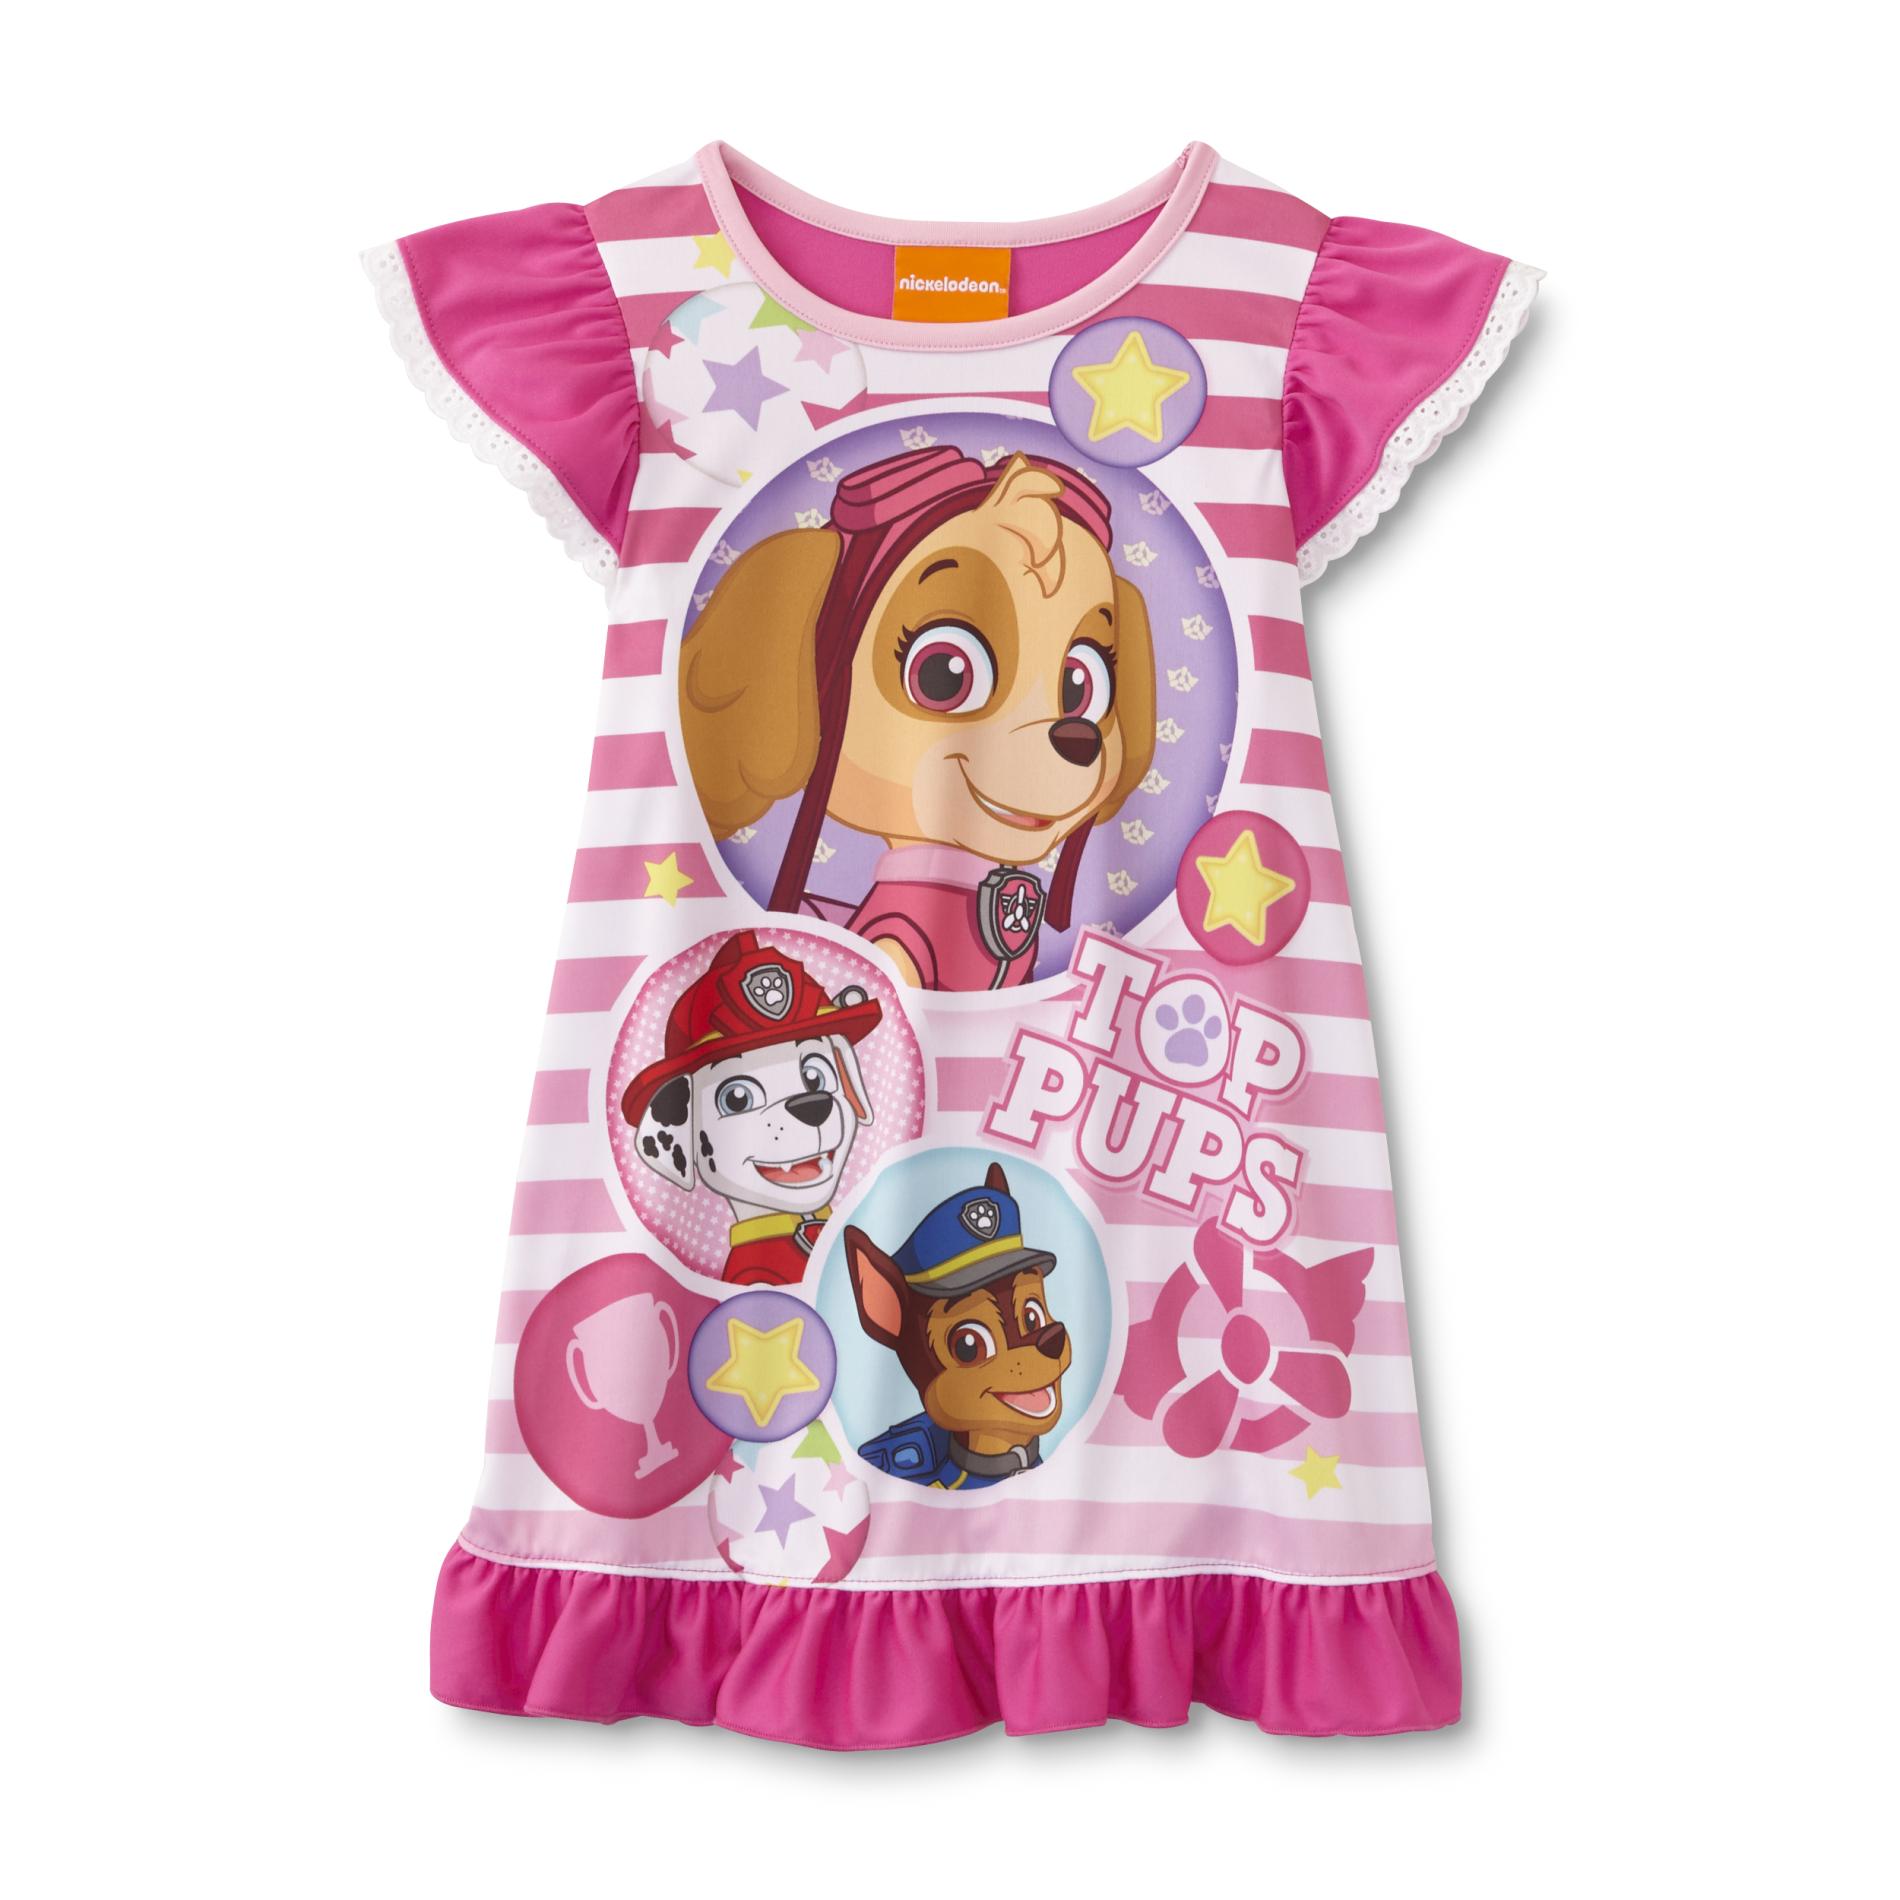 Nickelodeon PAW Patrol Toddler Girl's Nightgown